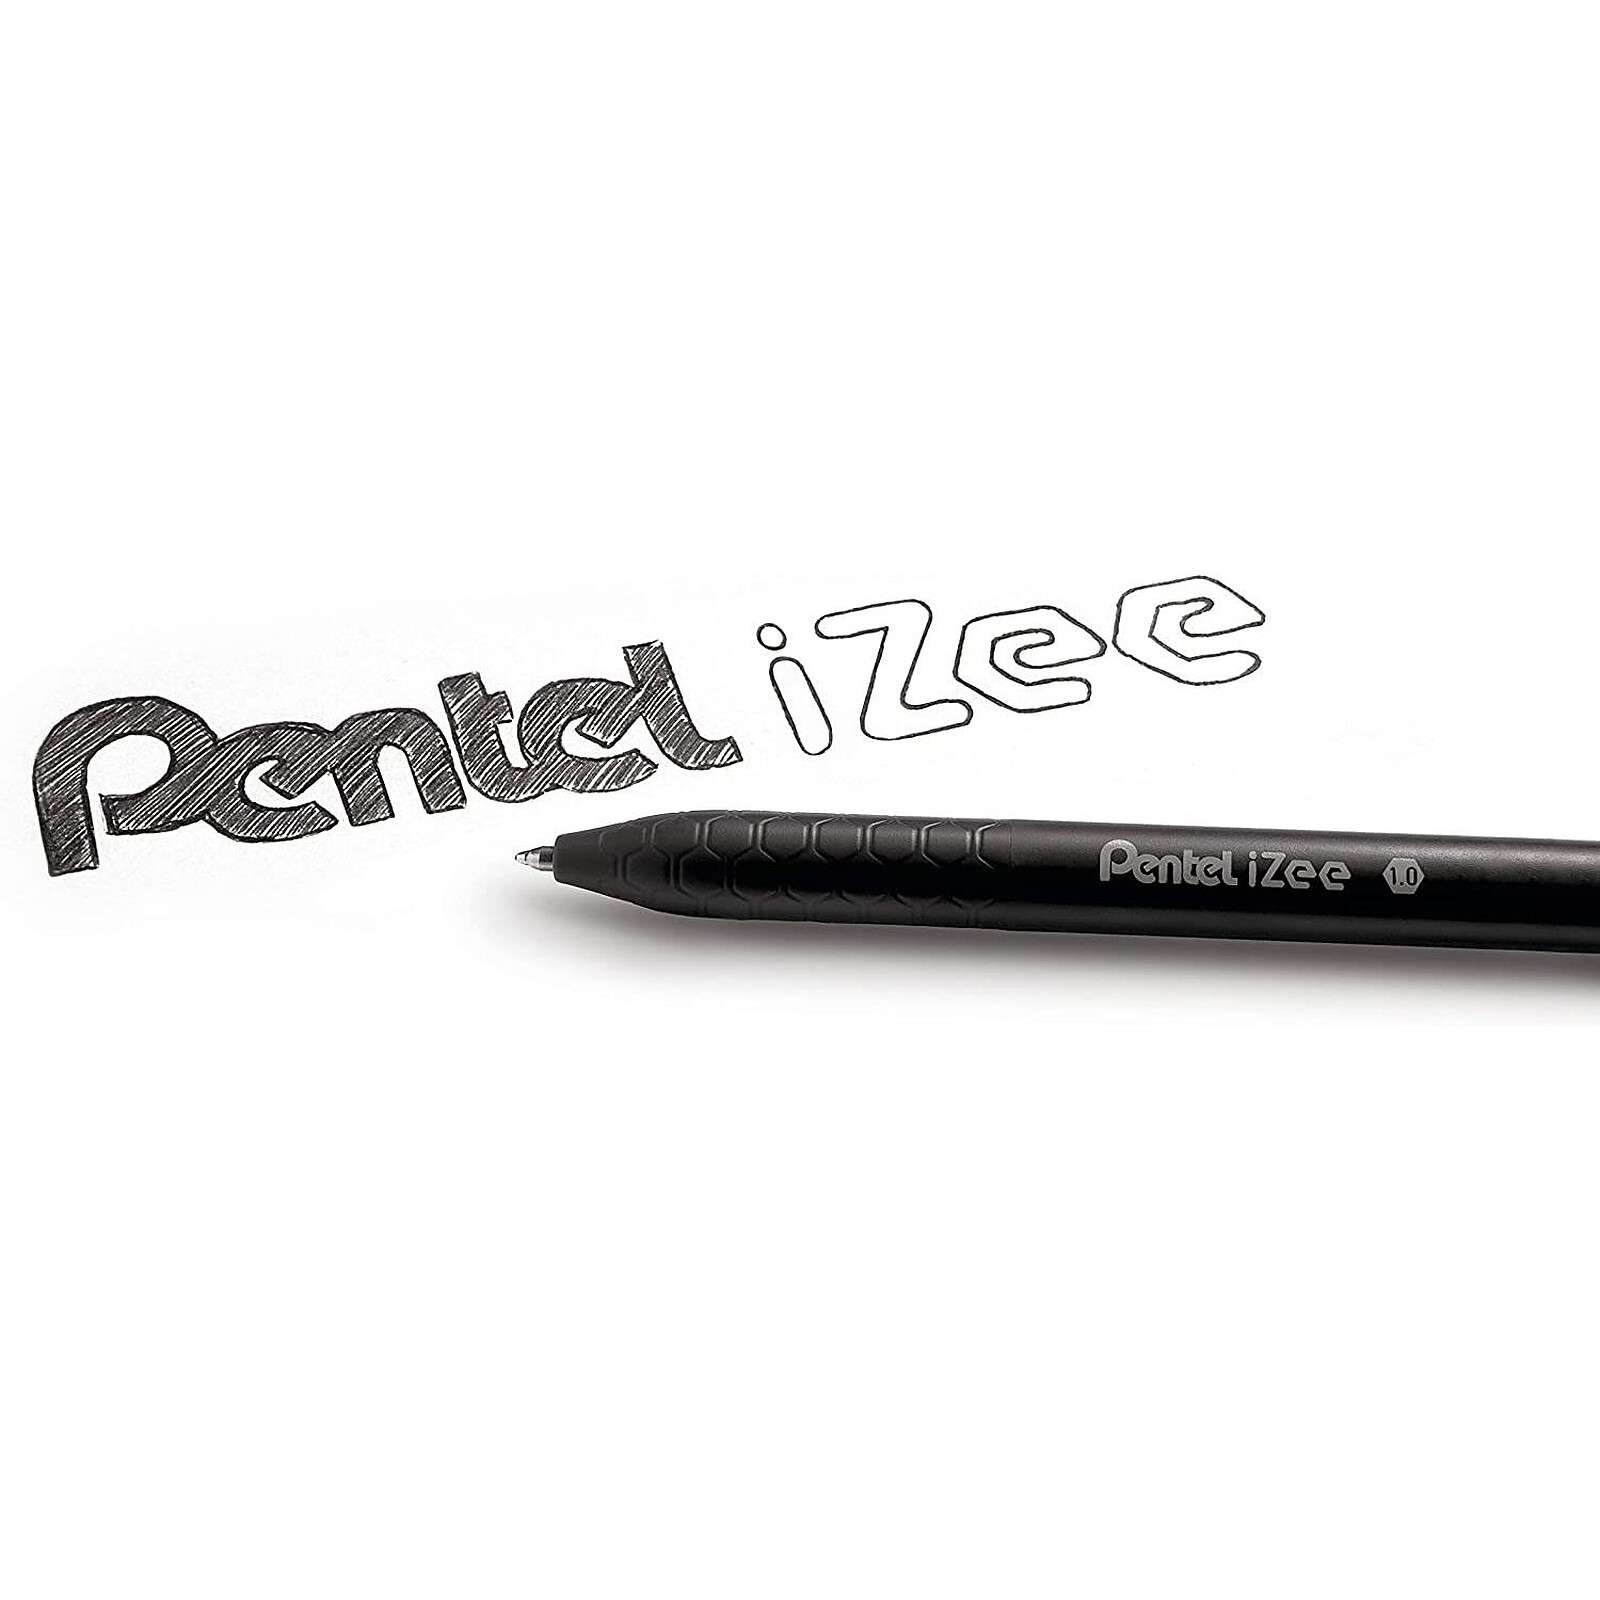 Pochette 6 stylos bille encre gel Pentel